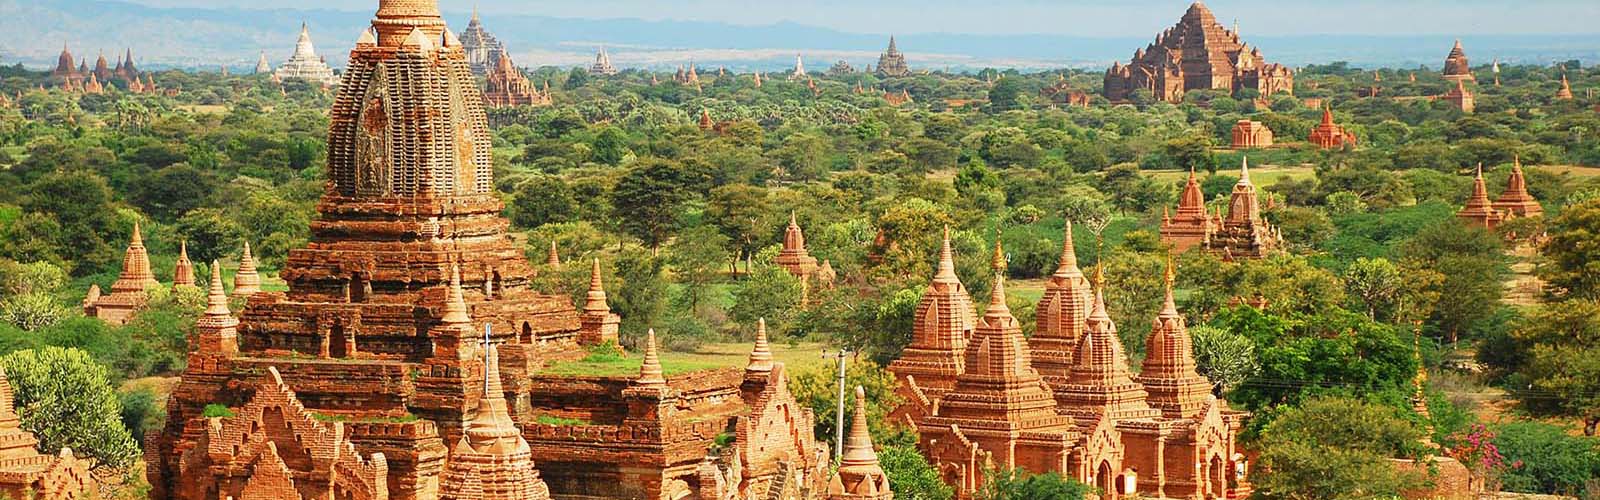 Voyage Myanmar, Voyage au Myanmar, Voyage sur mesure en Birmanie